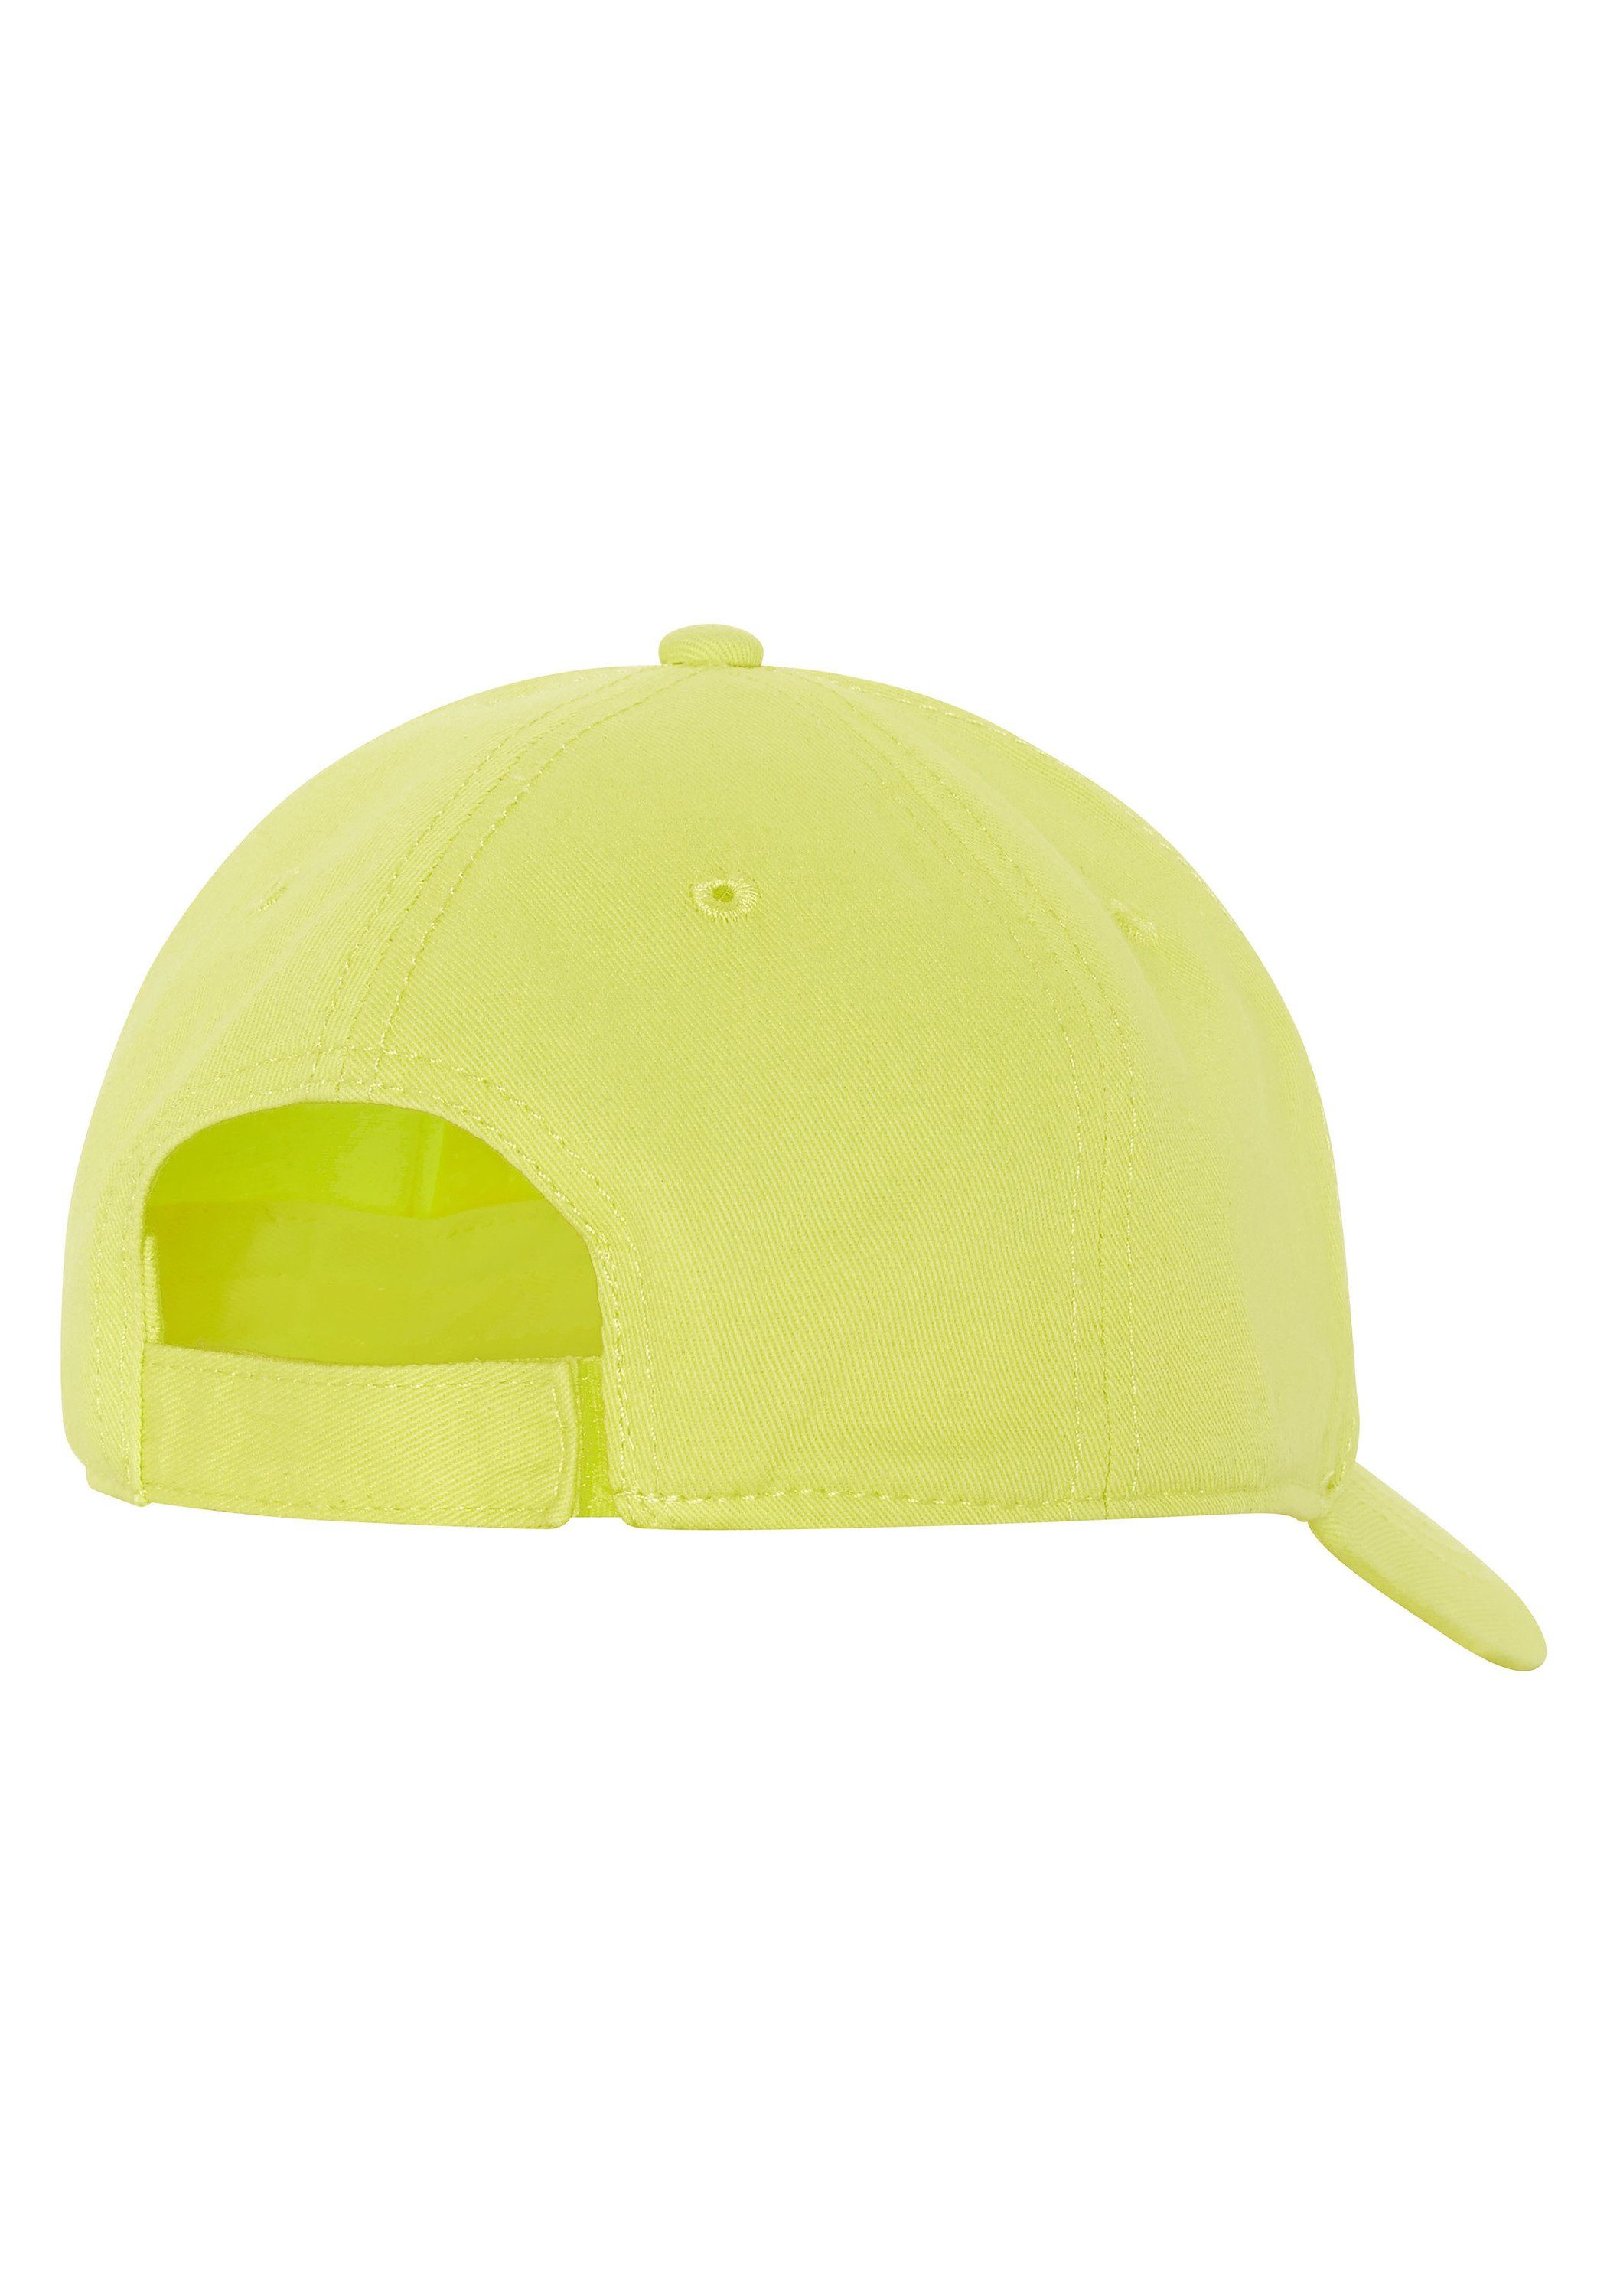 Unisex Cap Lemon Baumwolle Chiemsee Label-Design Snapback im Cap aus Tonic 1